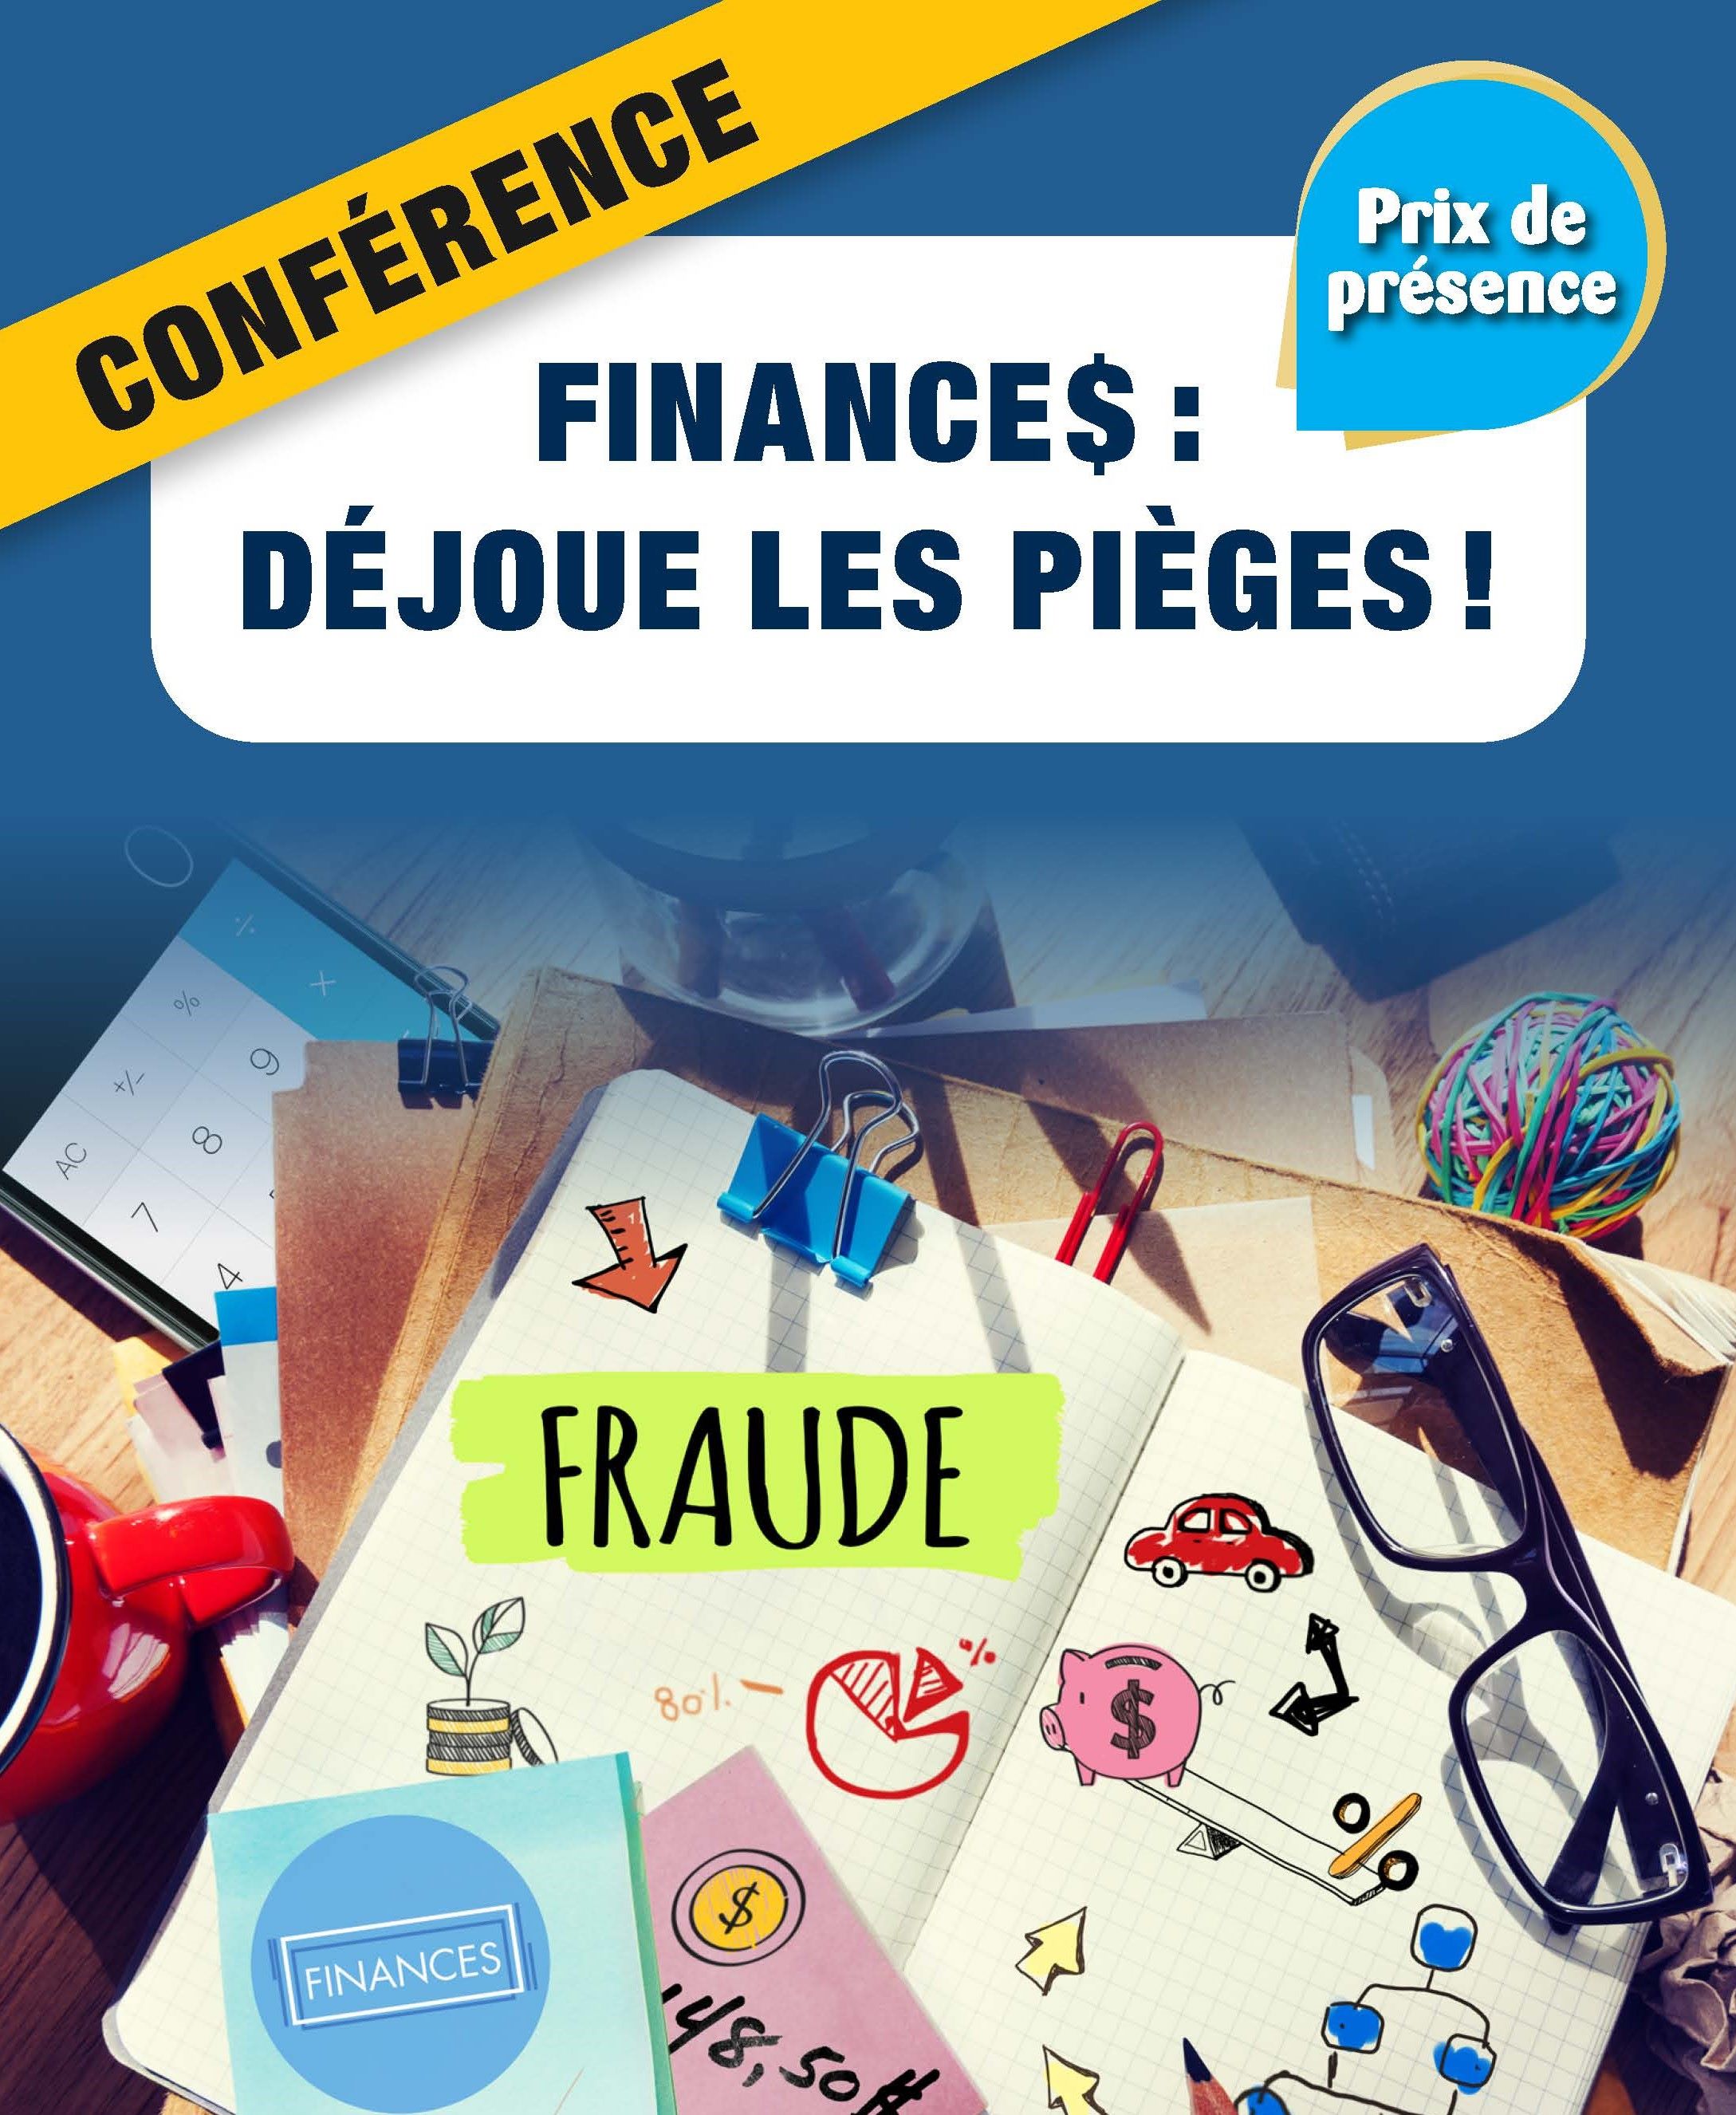 Affiche de la conférence « Finances : Déjoue les pièges! », on voit des cahiers avec des notes, des lunettes et une tasse de café.